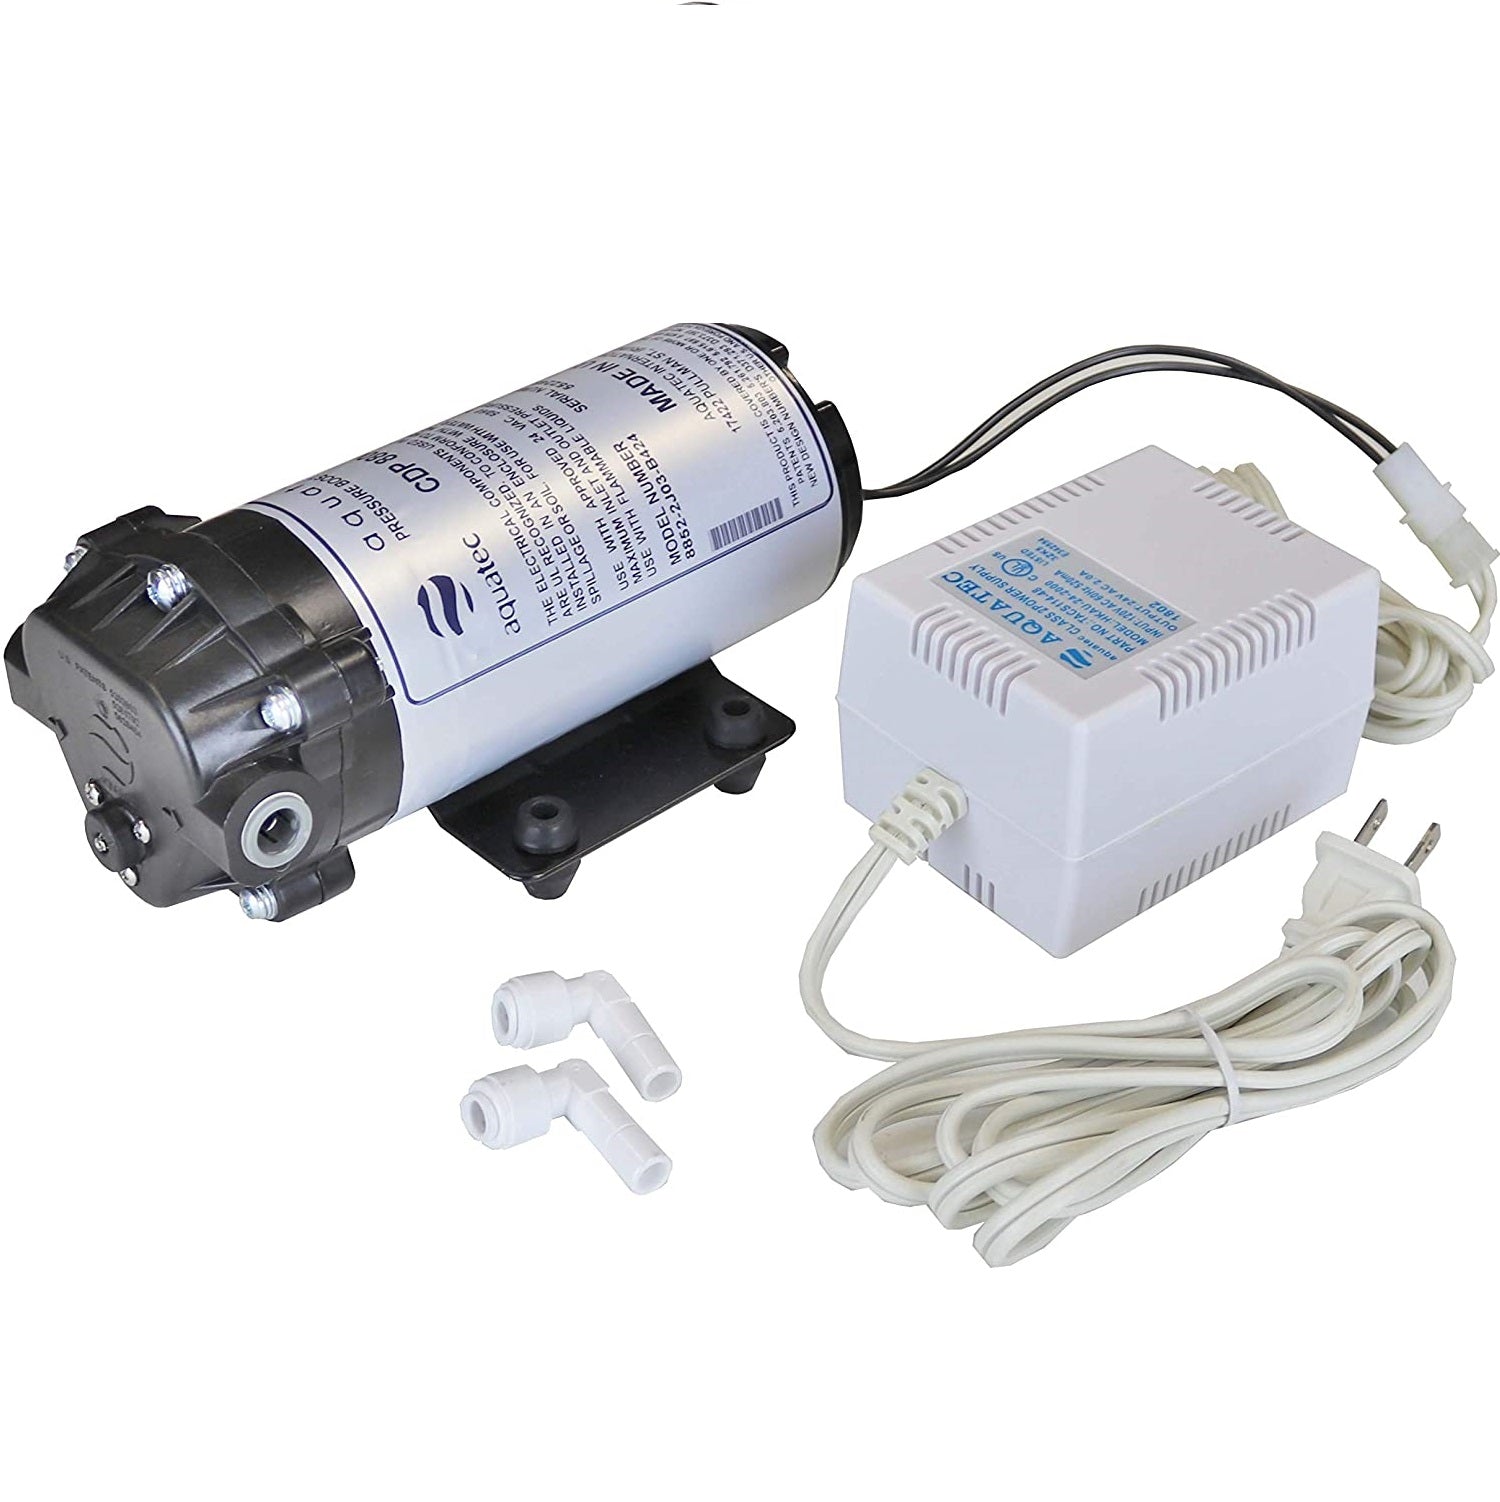 AquaTec CDP8800 Water Pump User Guide